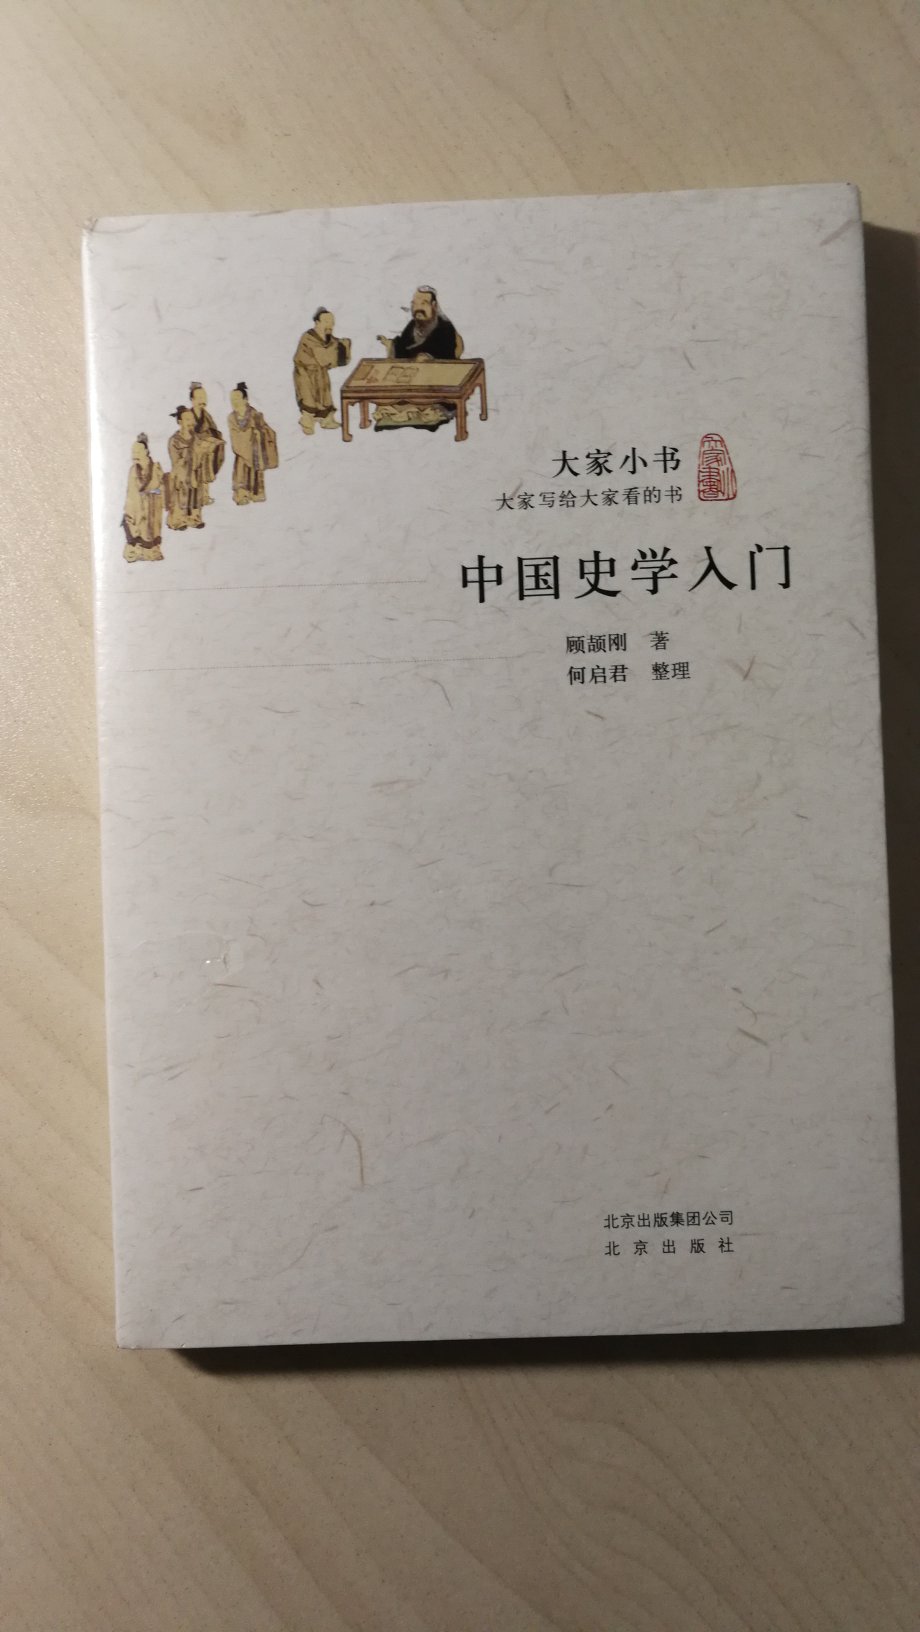 双11买的书。一直对南北朝的历史有兴趣，看看。